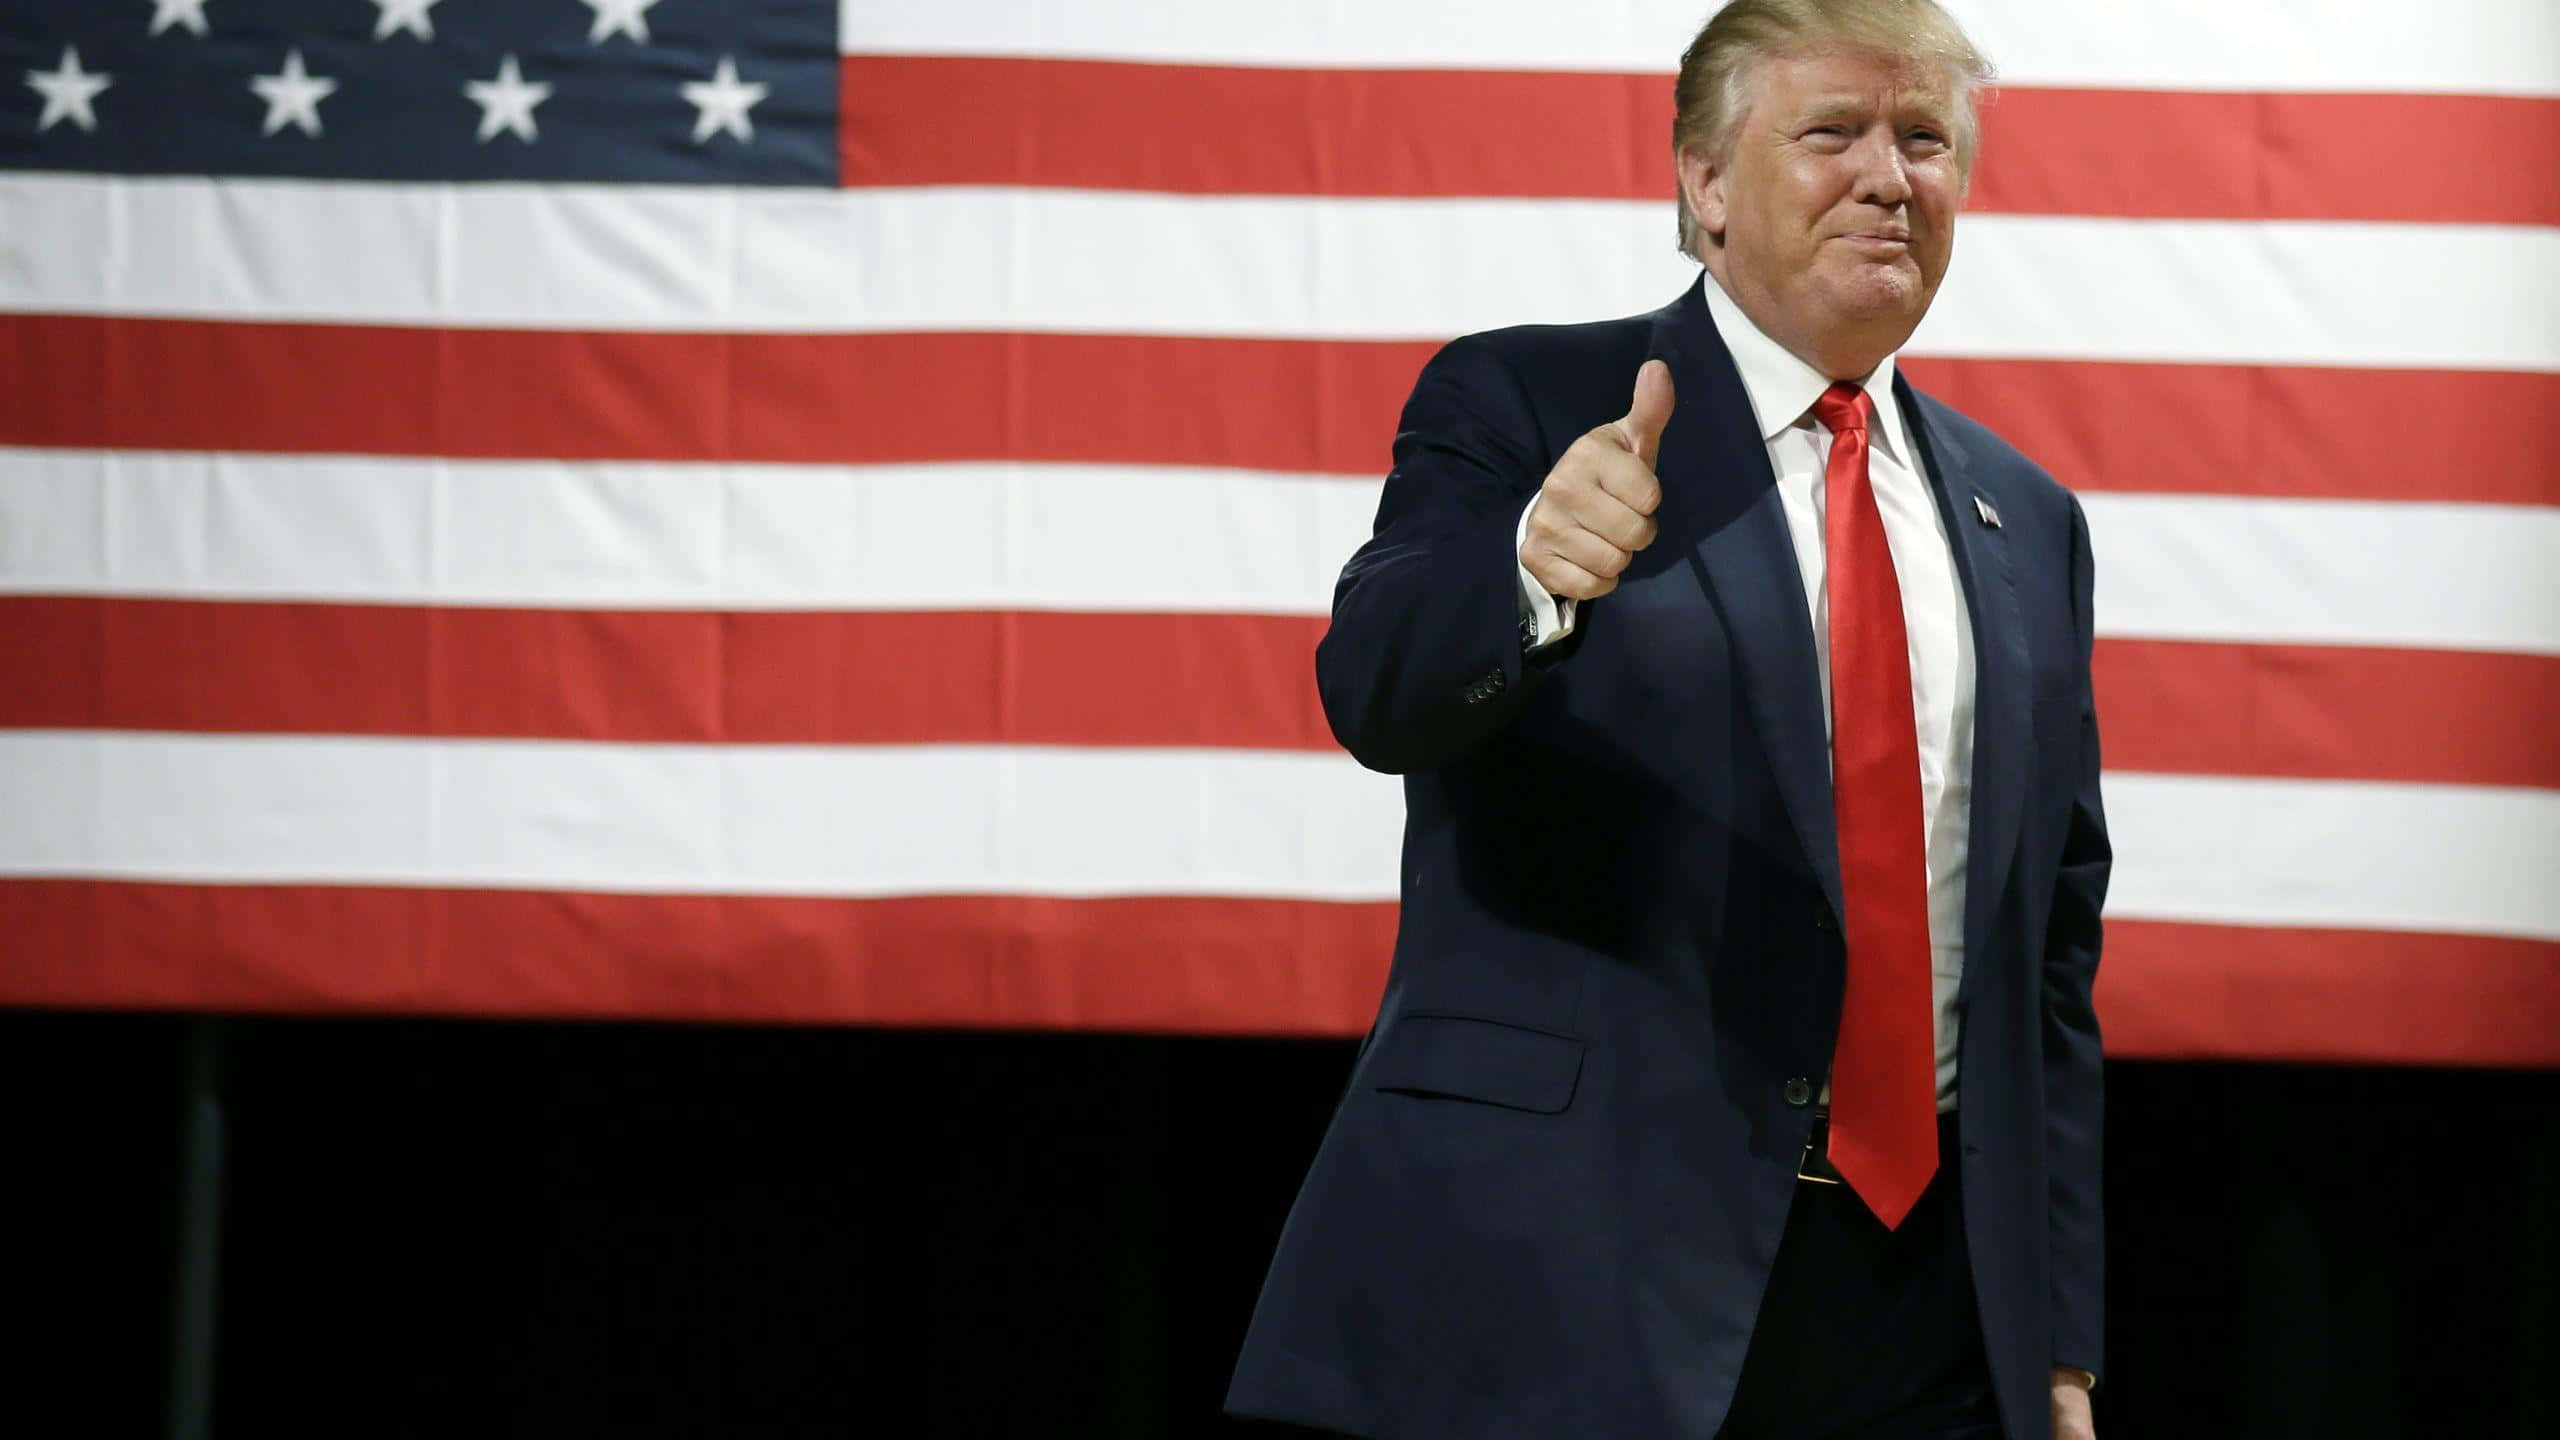 Ilpresidente Donald Trump Che Pronuncia Un Discorso Con La Bandiera Americana Sullo Sfondo.